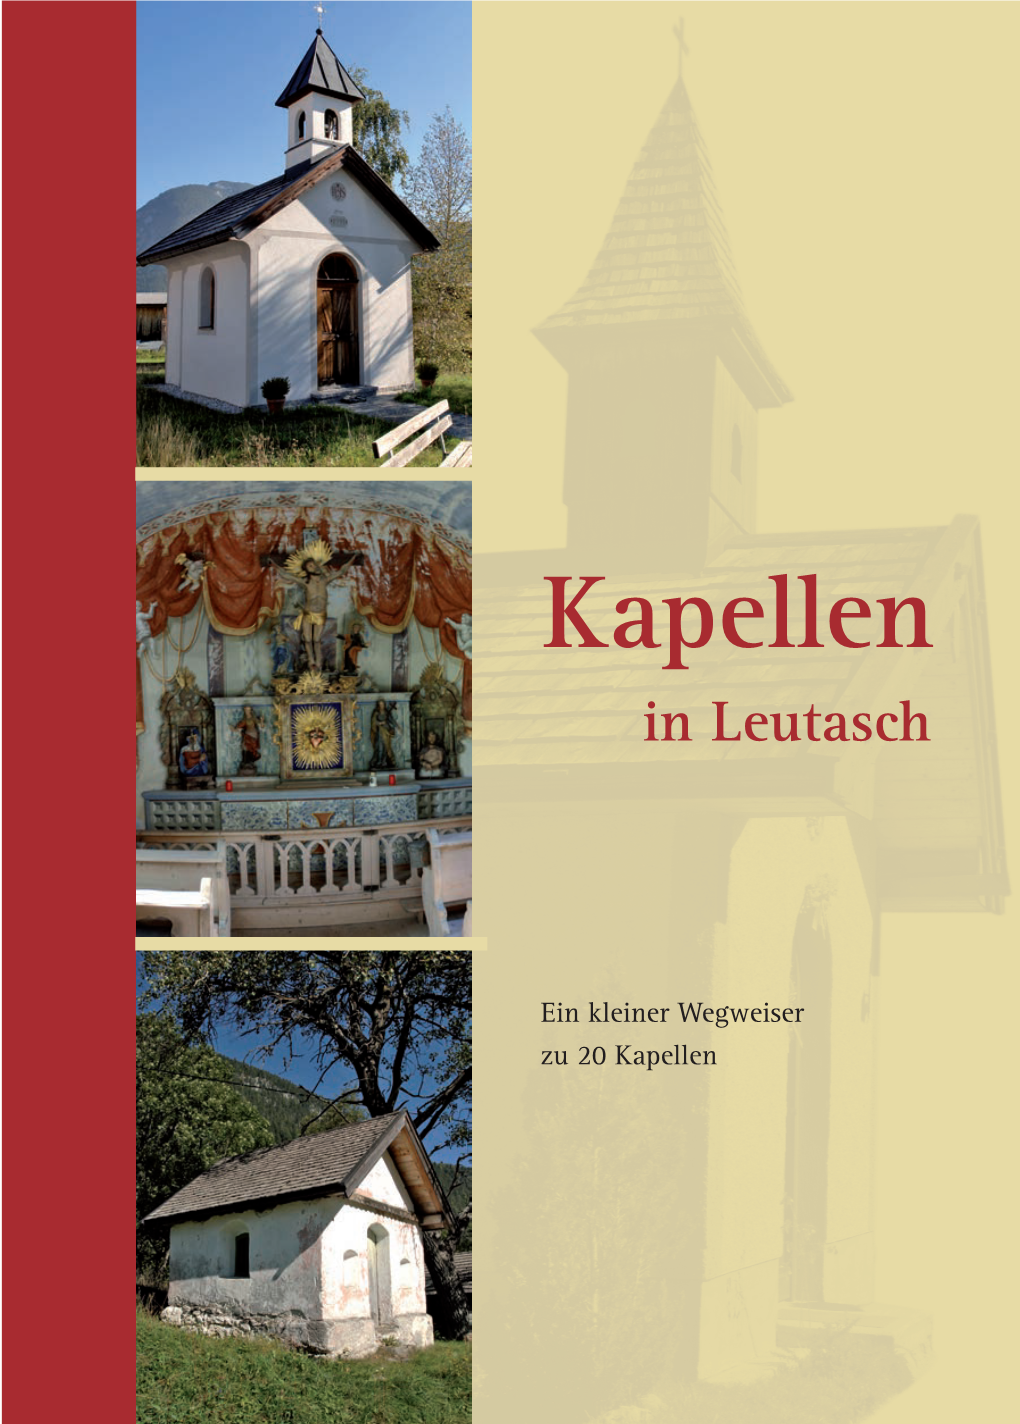 Kapellenführer Leutasch 29.05.2008 9:48 Uhr Seite 1